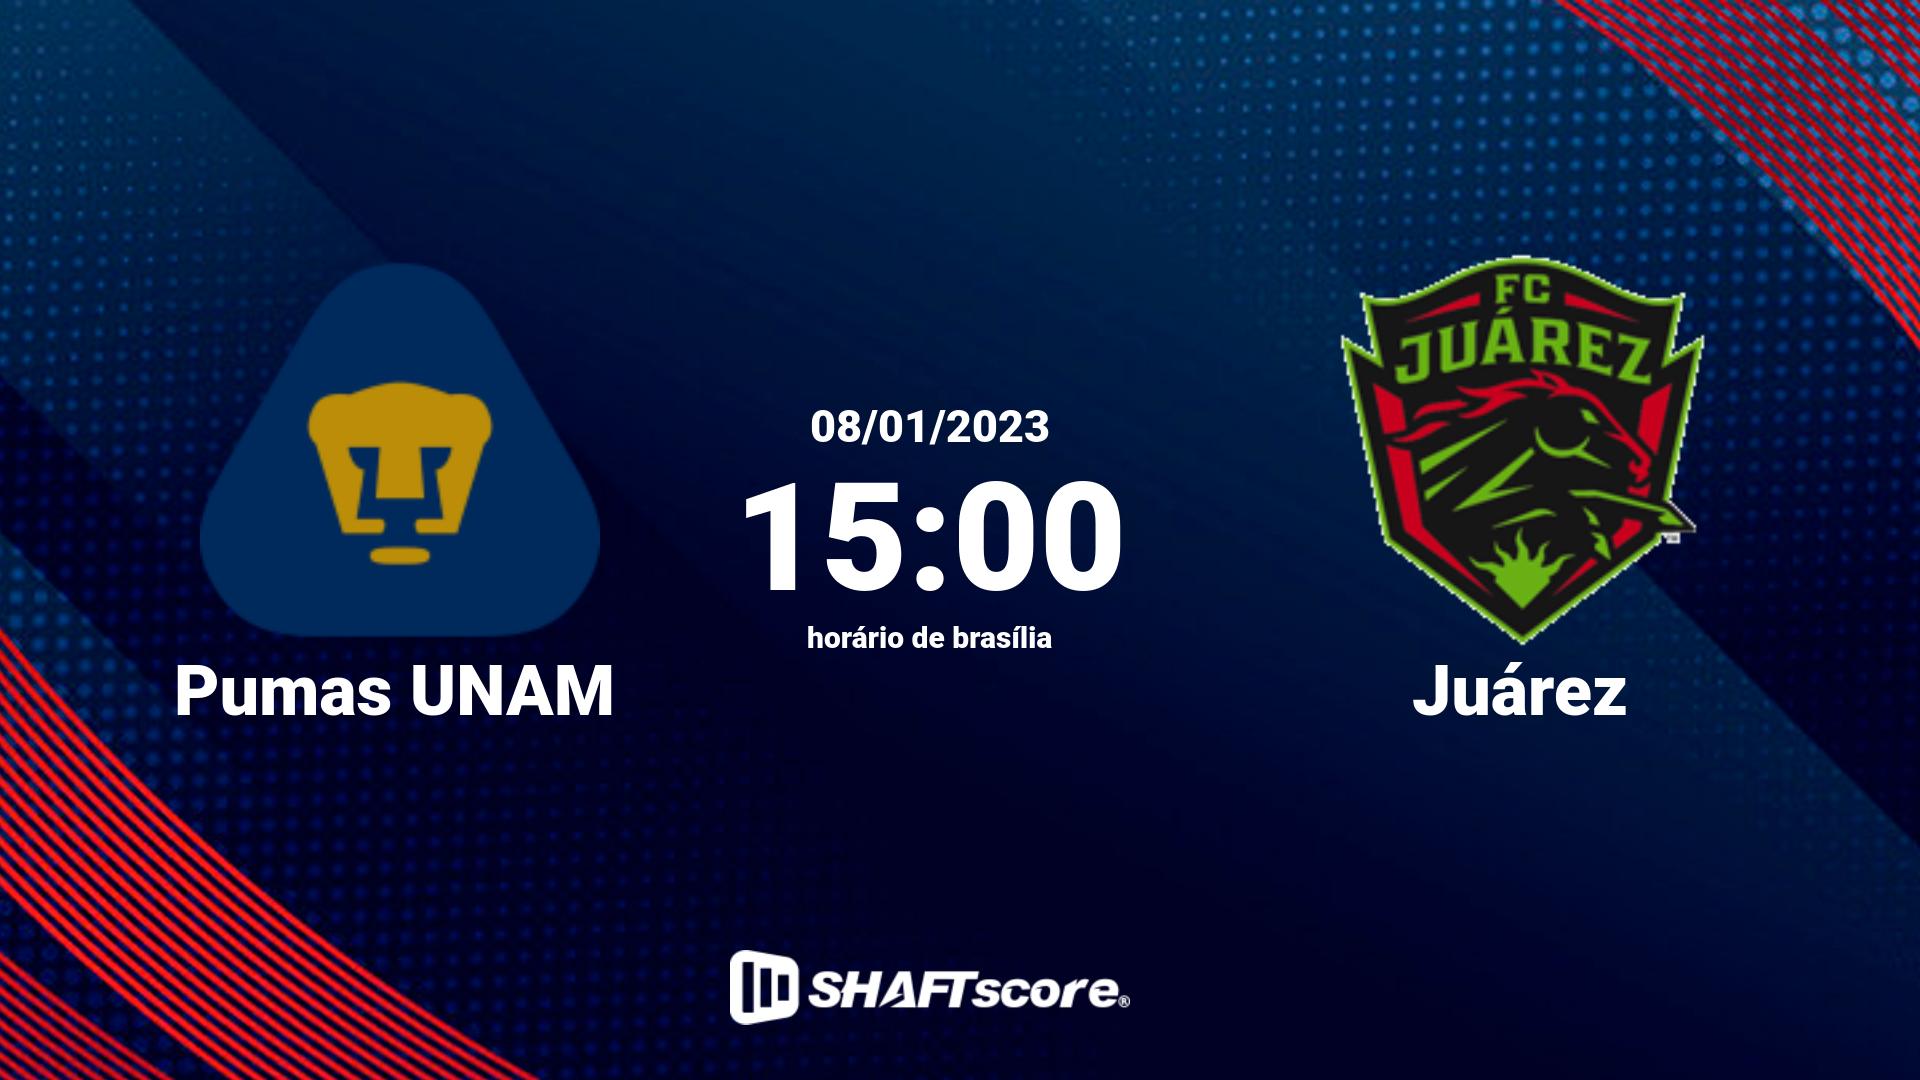 Estatísticas do jogo Pumas UNAM vs Juárez 08.01 15:00